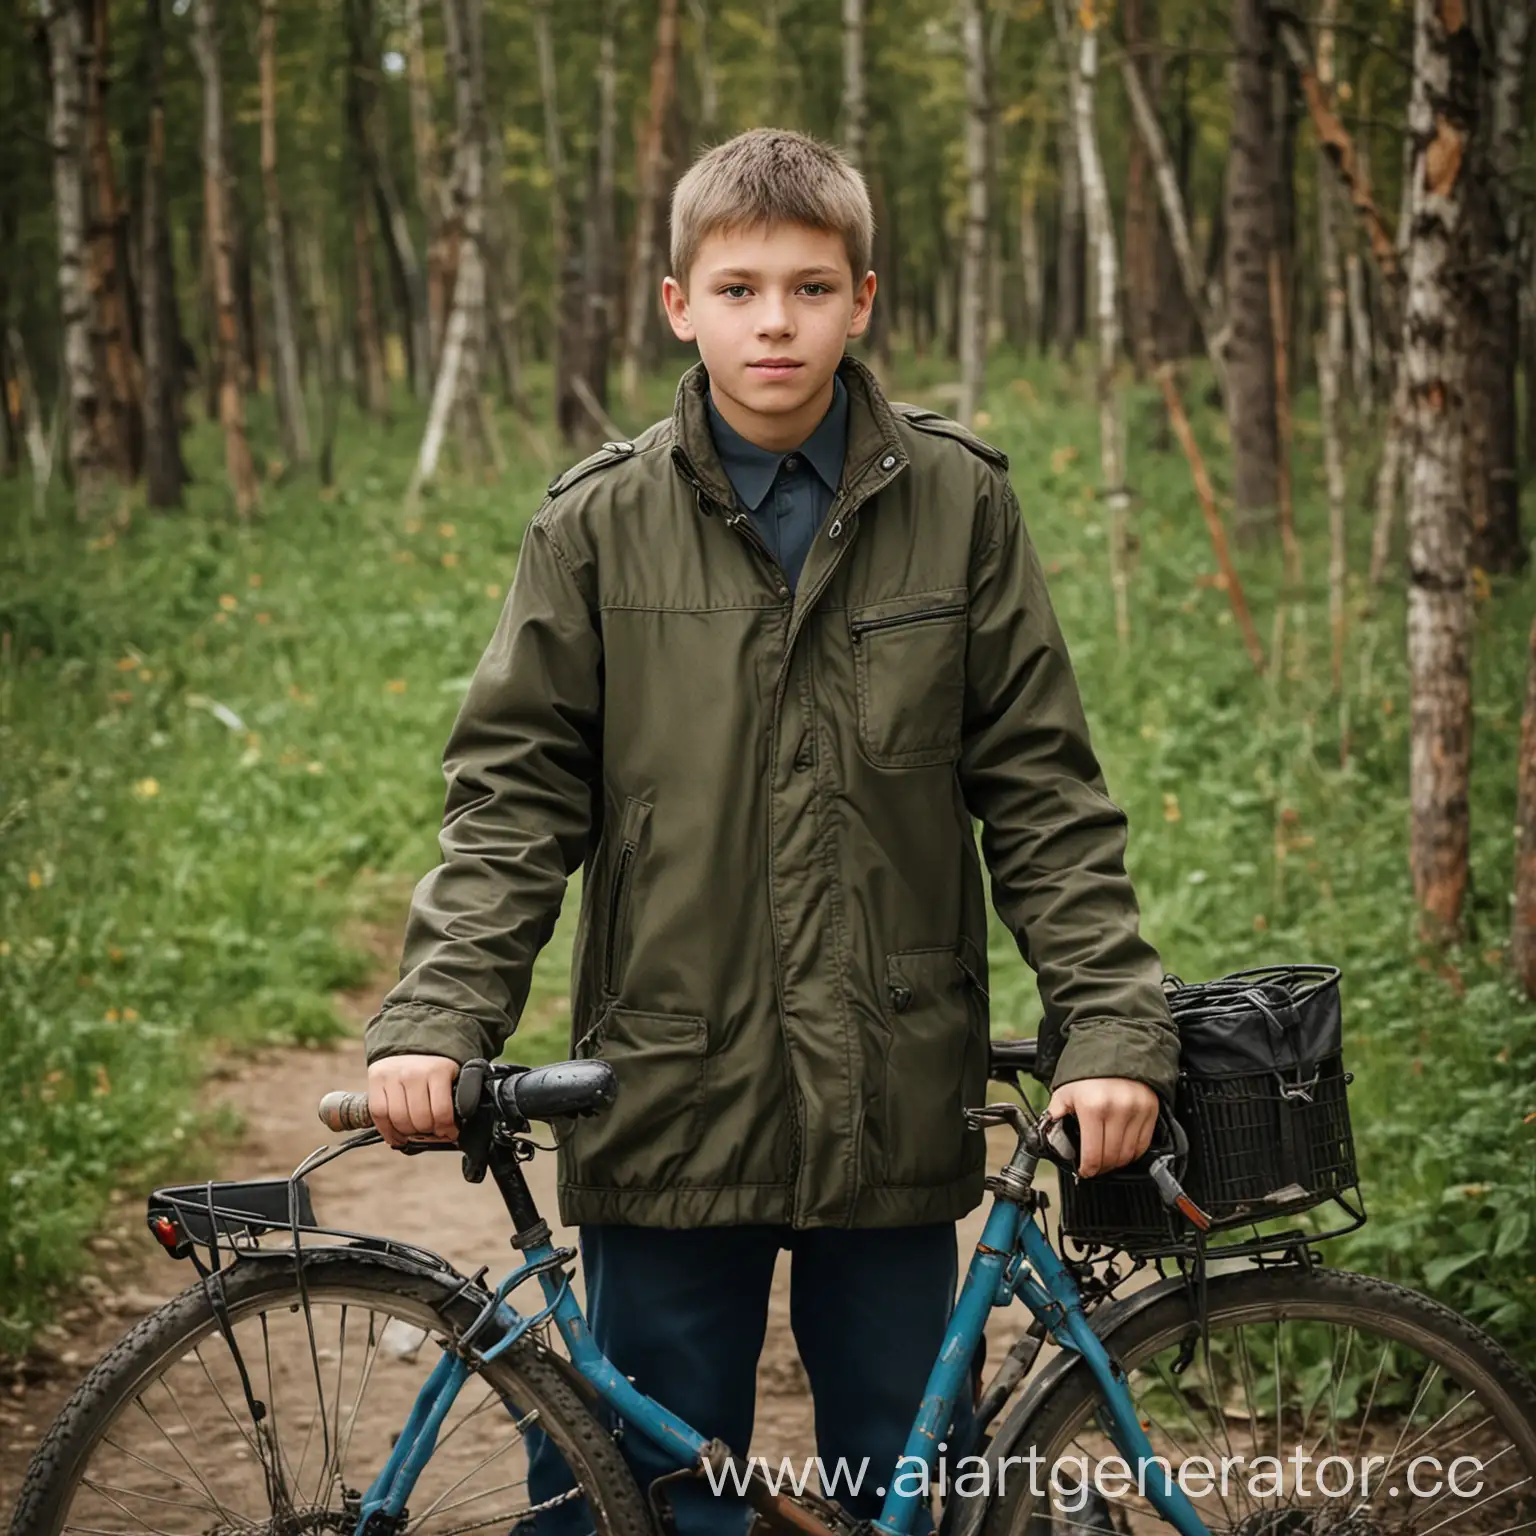  Фото русского парня 18 лет на велосипеде